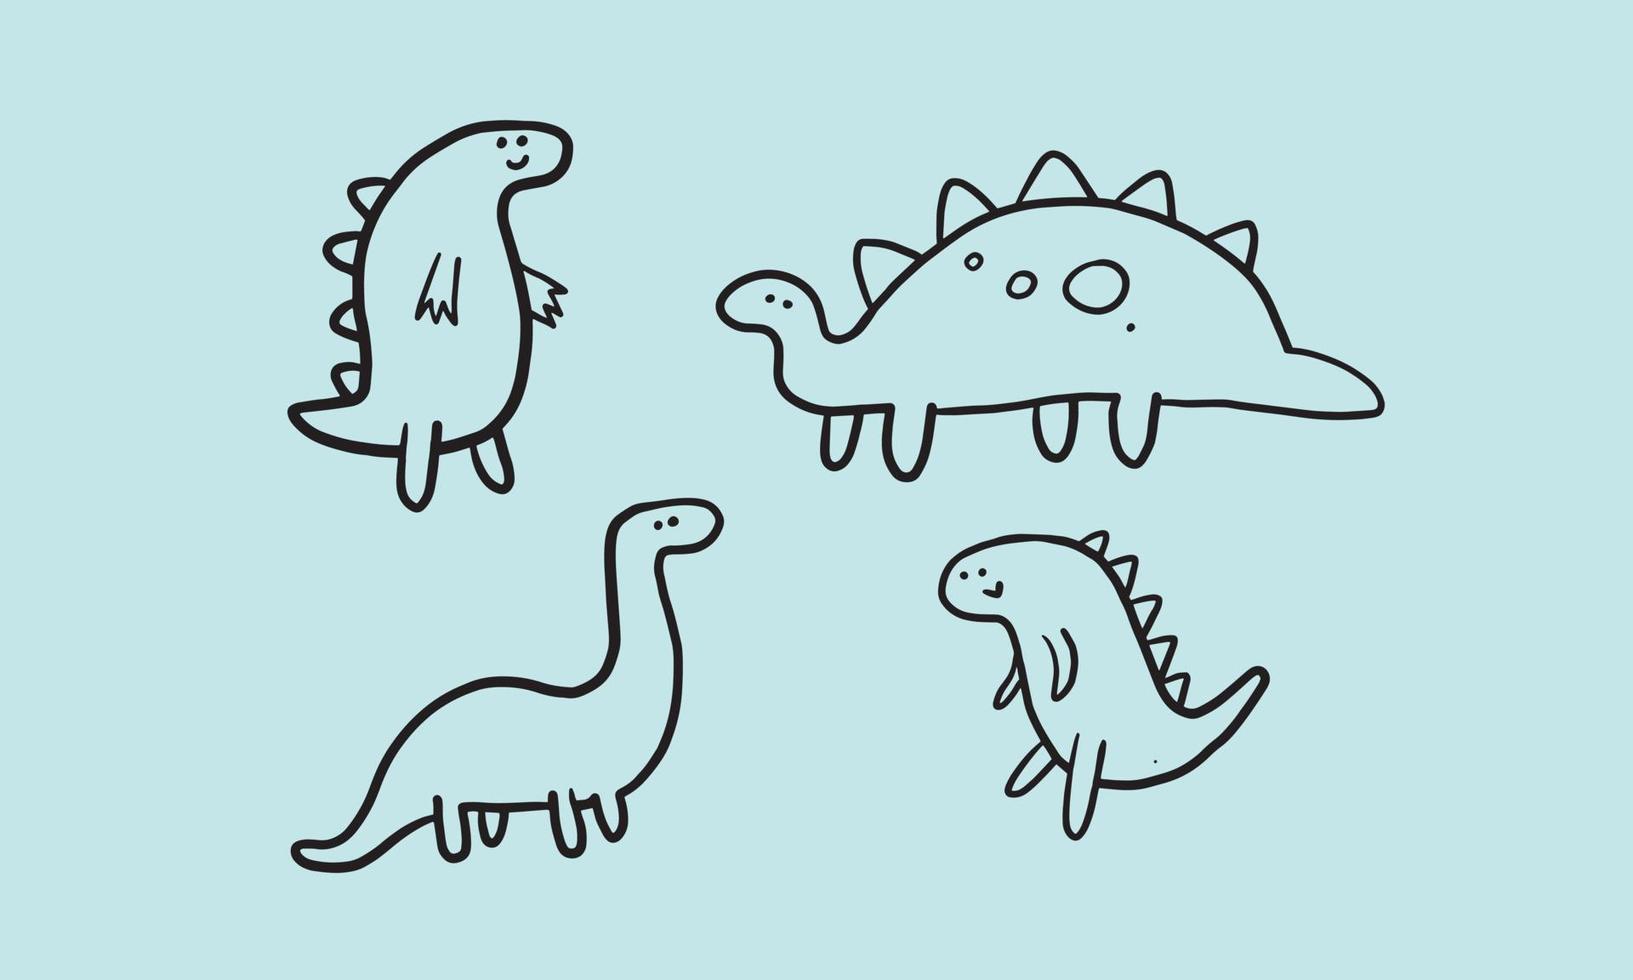 serie di simpatiche illustrazioni di dinosauri. design semplice e minimale per bambini. elemento divertente per creare campagne o poster per bambini. vettore